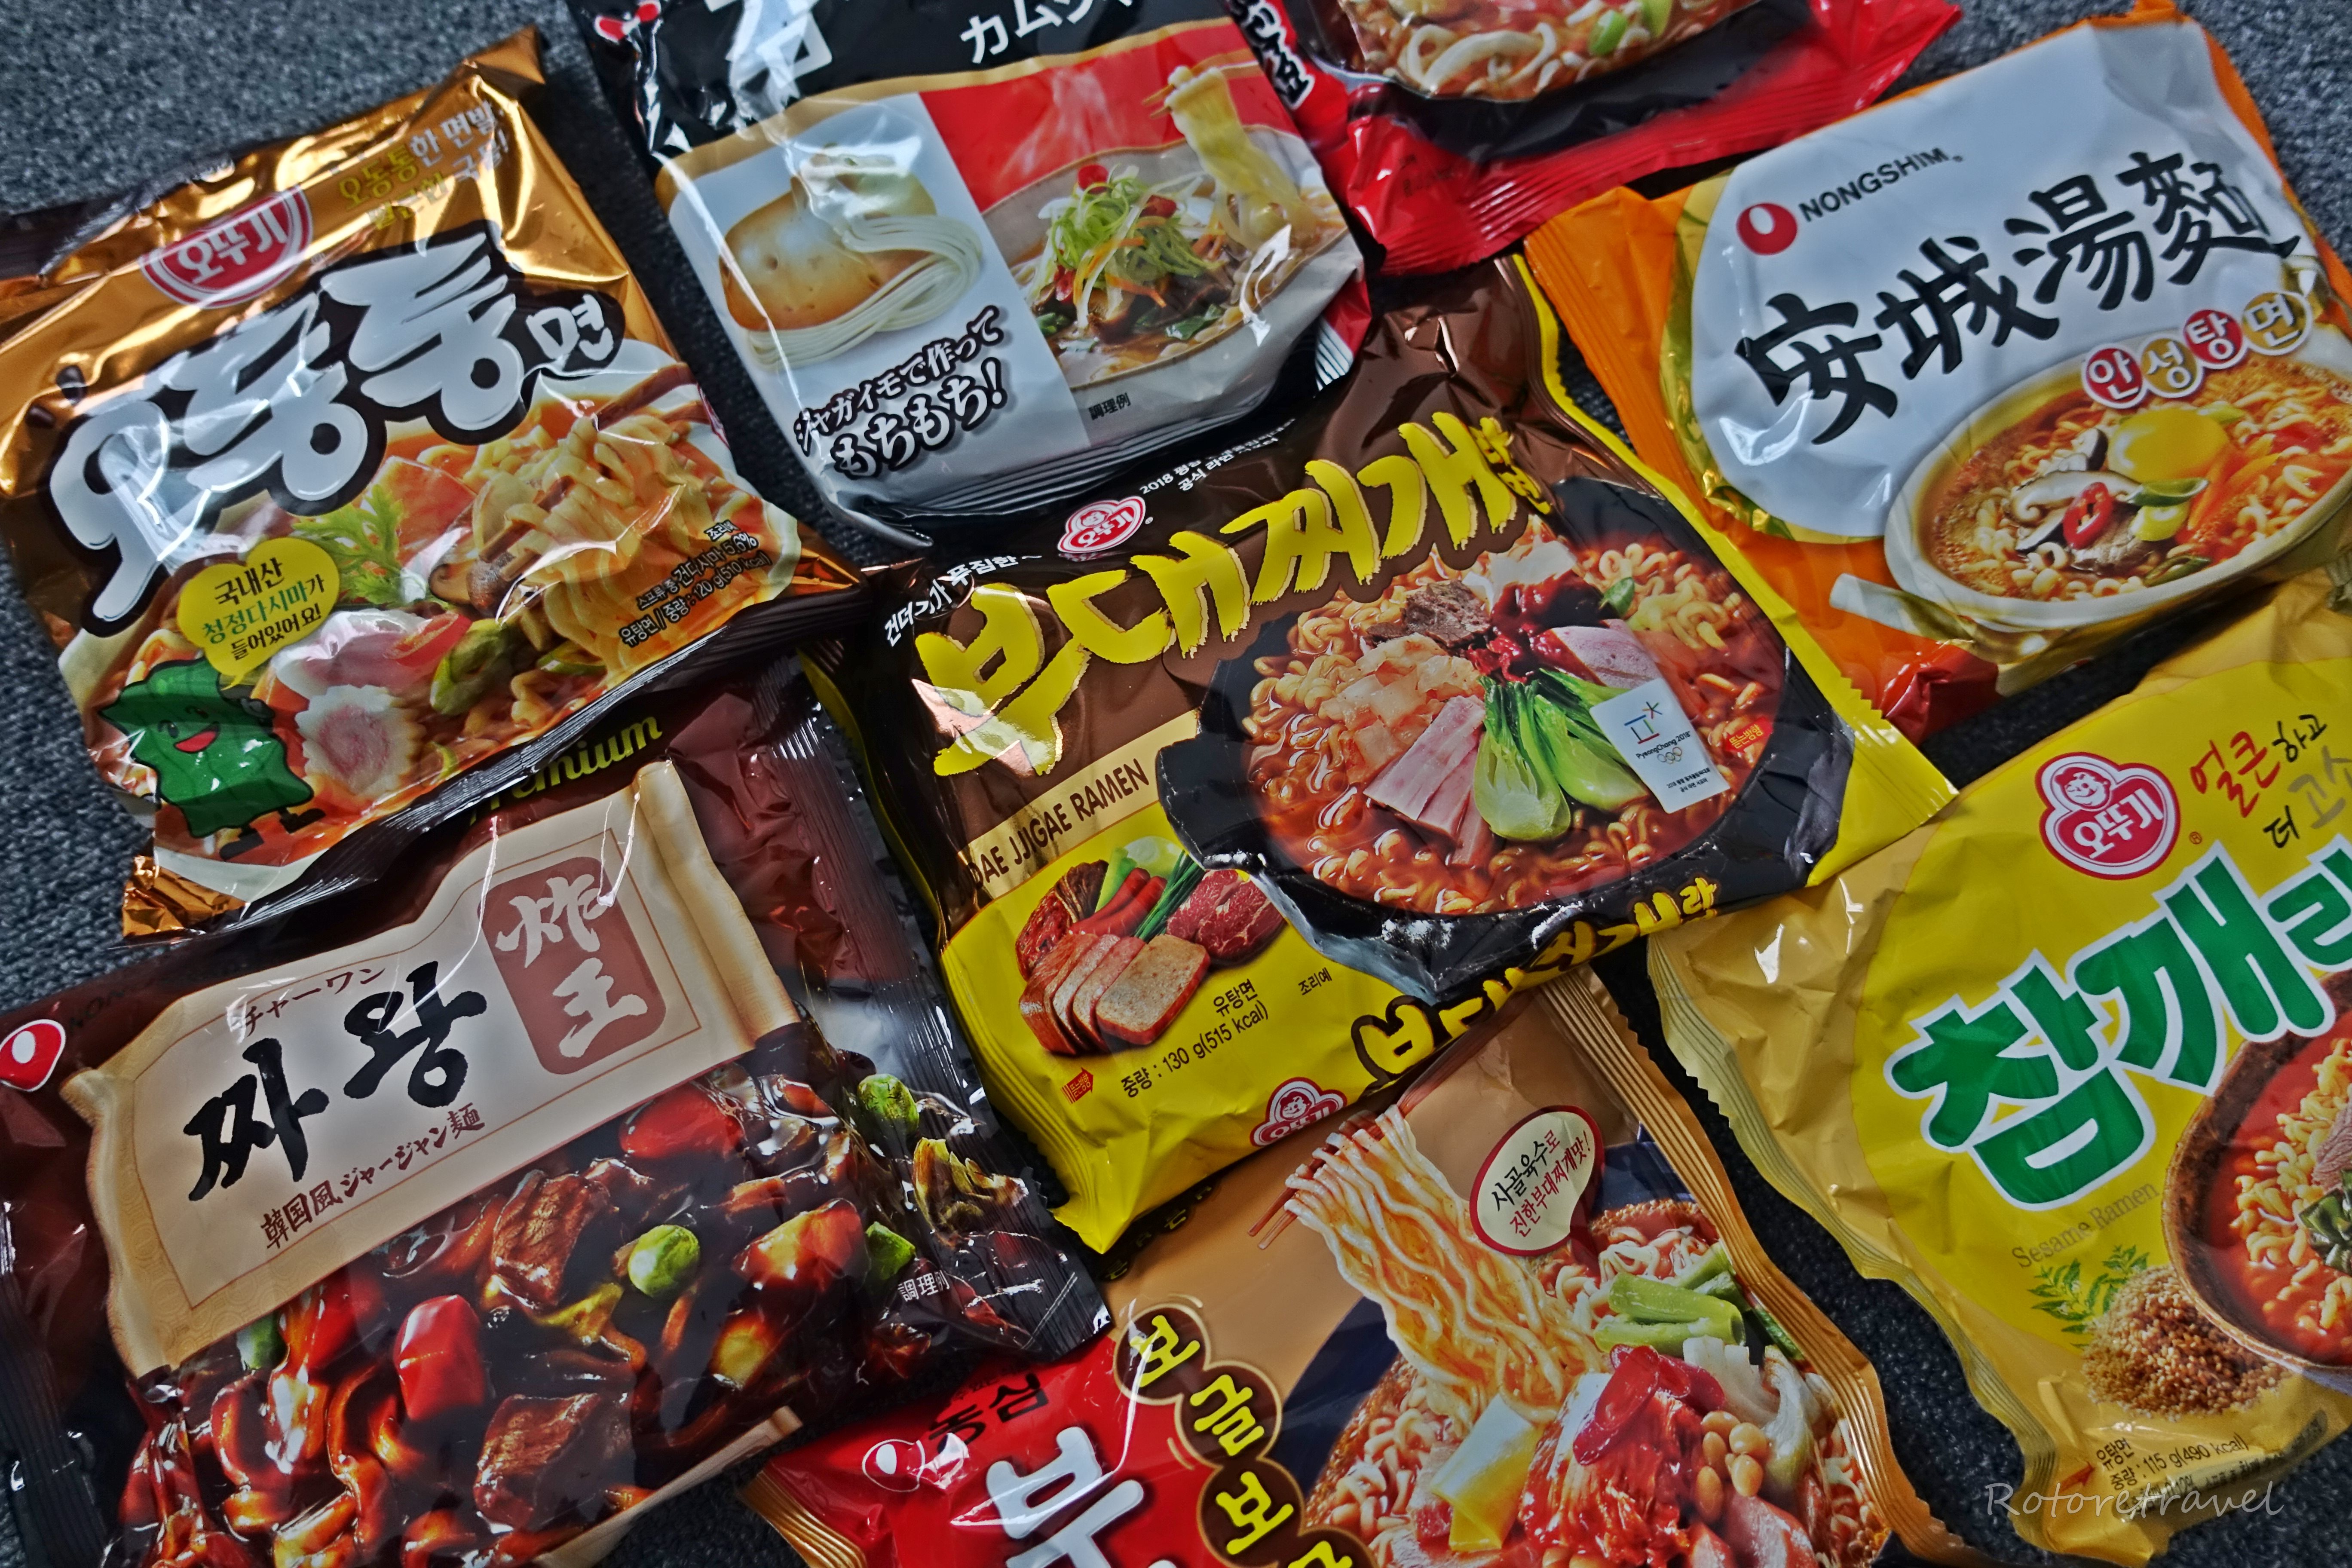 【東京・新大久保】韓国のインスタントラーメンが定期的に食べたくなる件について